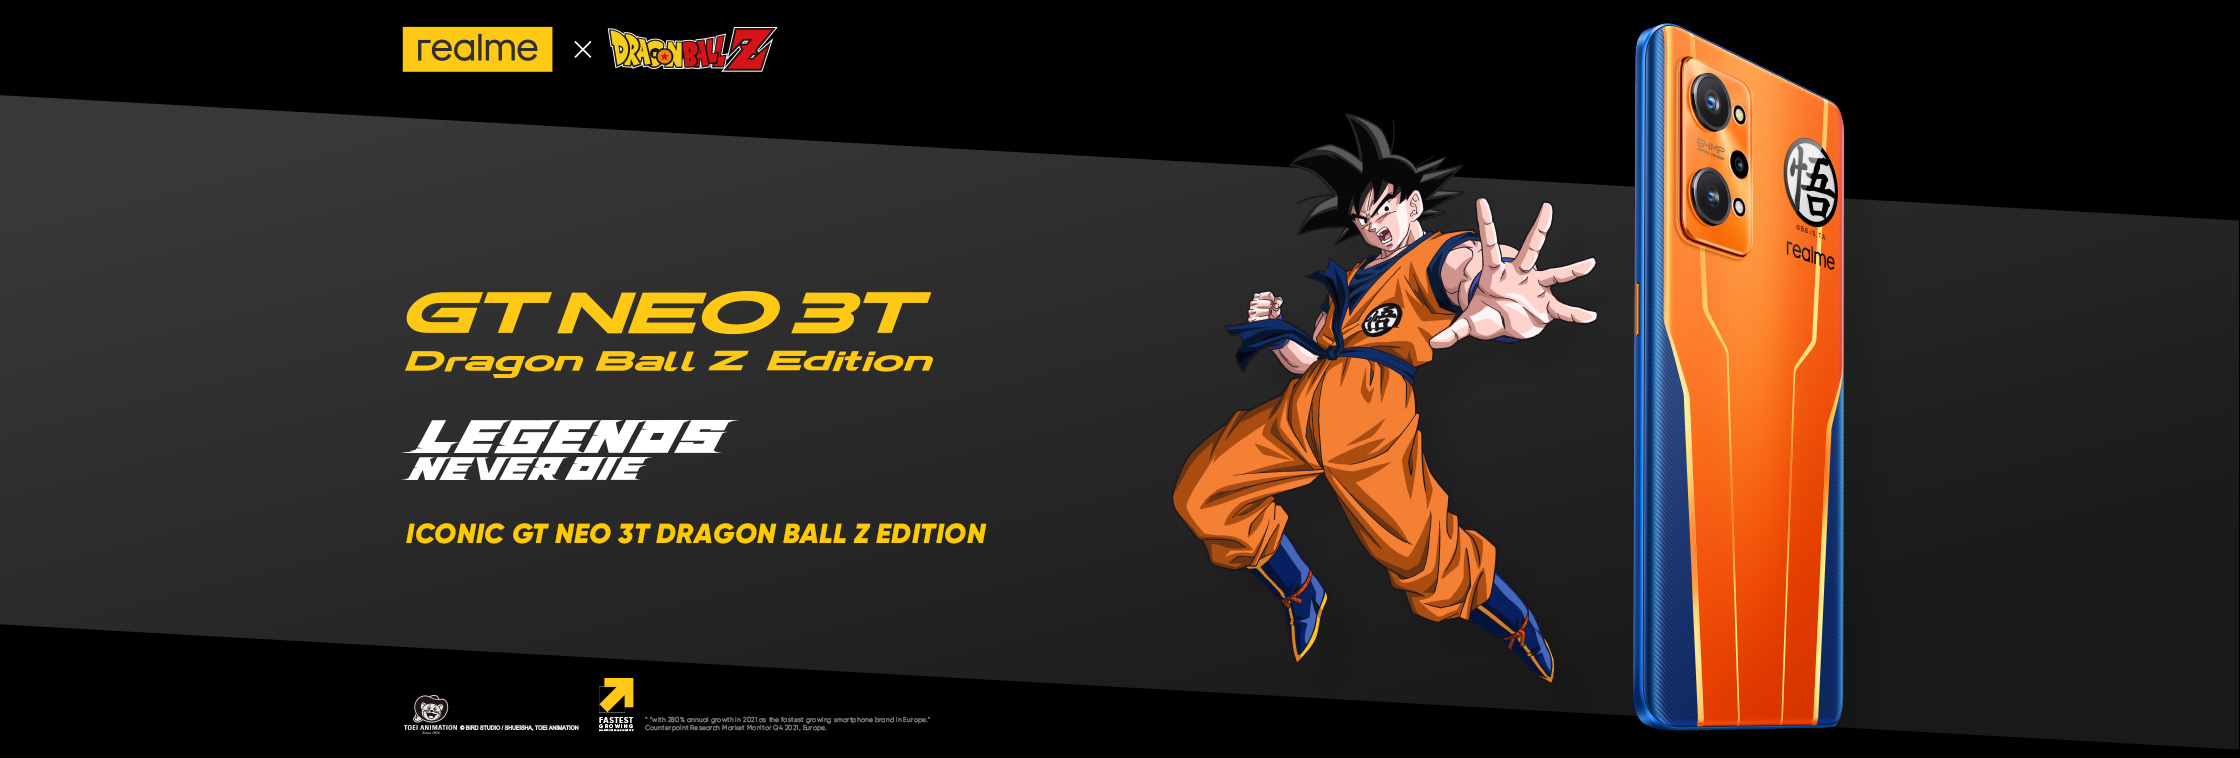 realme GT Neo 3T Dragon Ball Edition